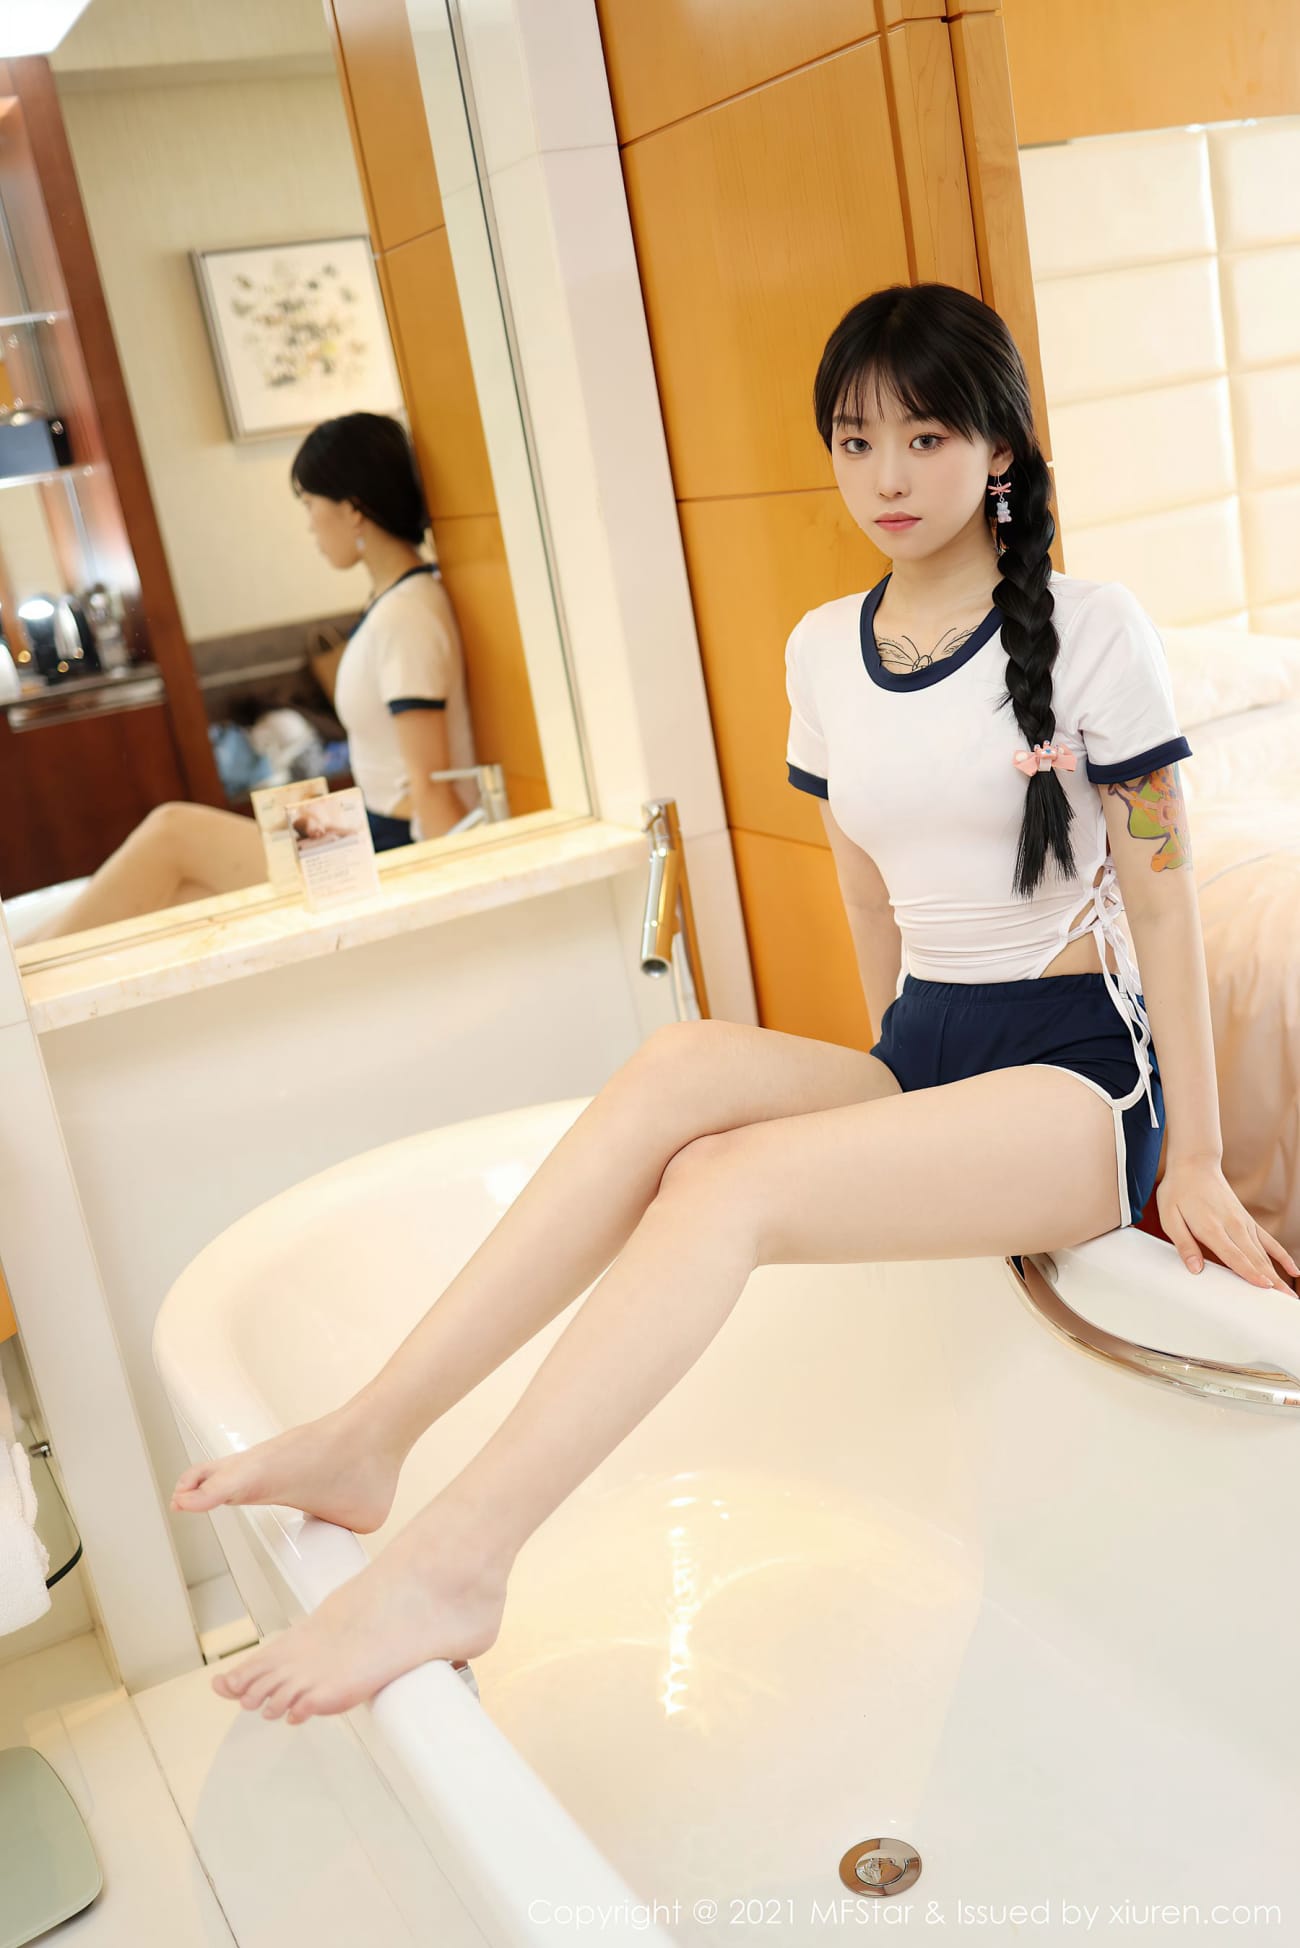 模特奶瓶子 - 马尾辫+体操服日系风格性感写真